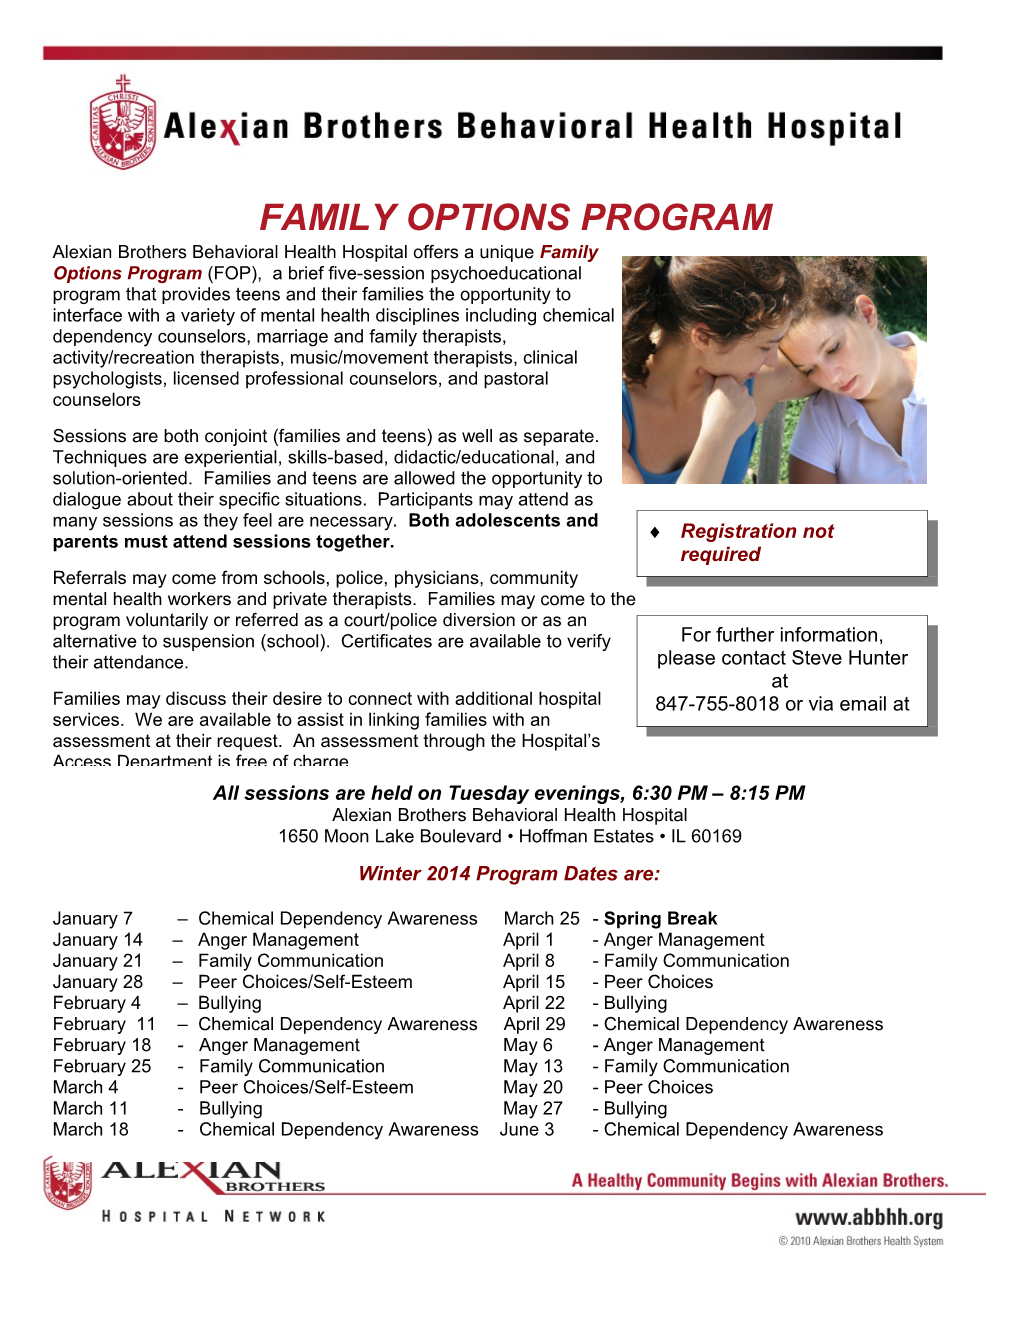 Family Options Program